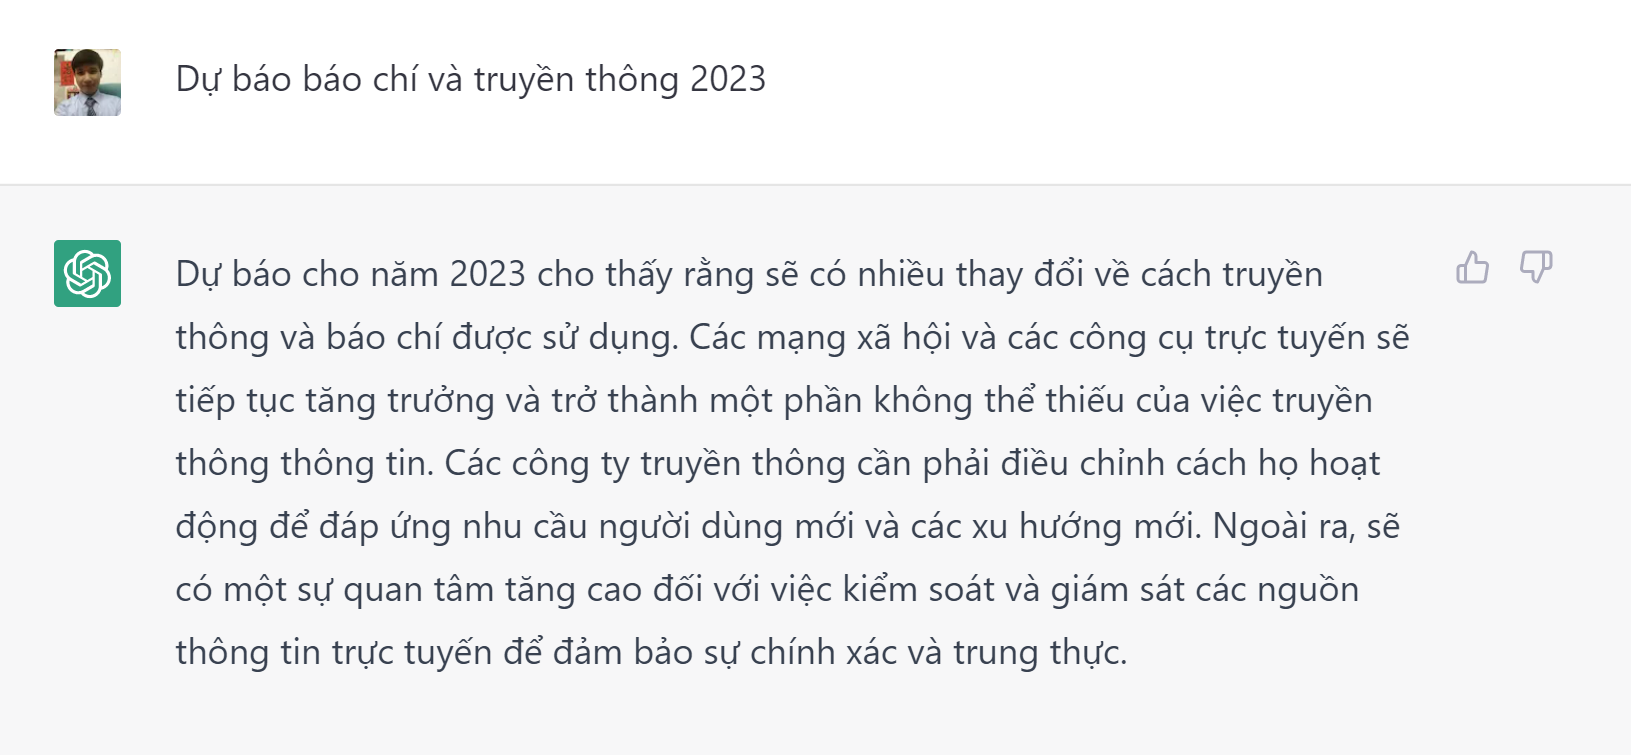 du_bao_bao_chi_va_truyen_thong_2023.png